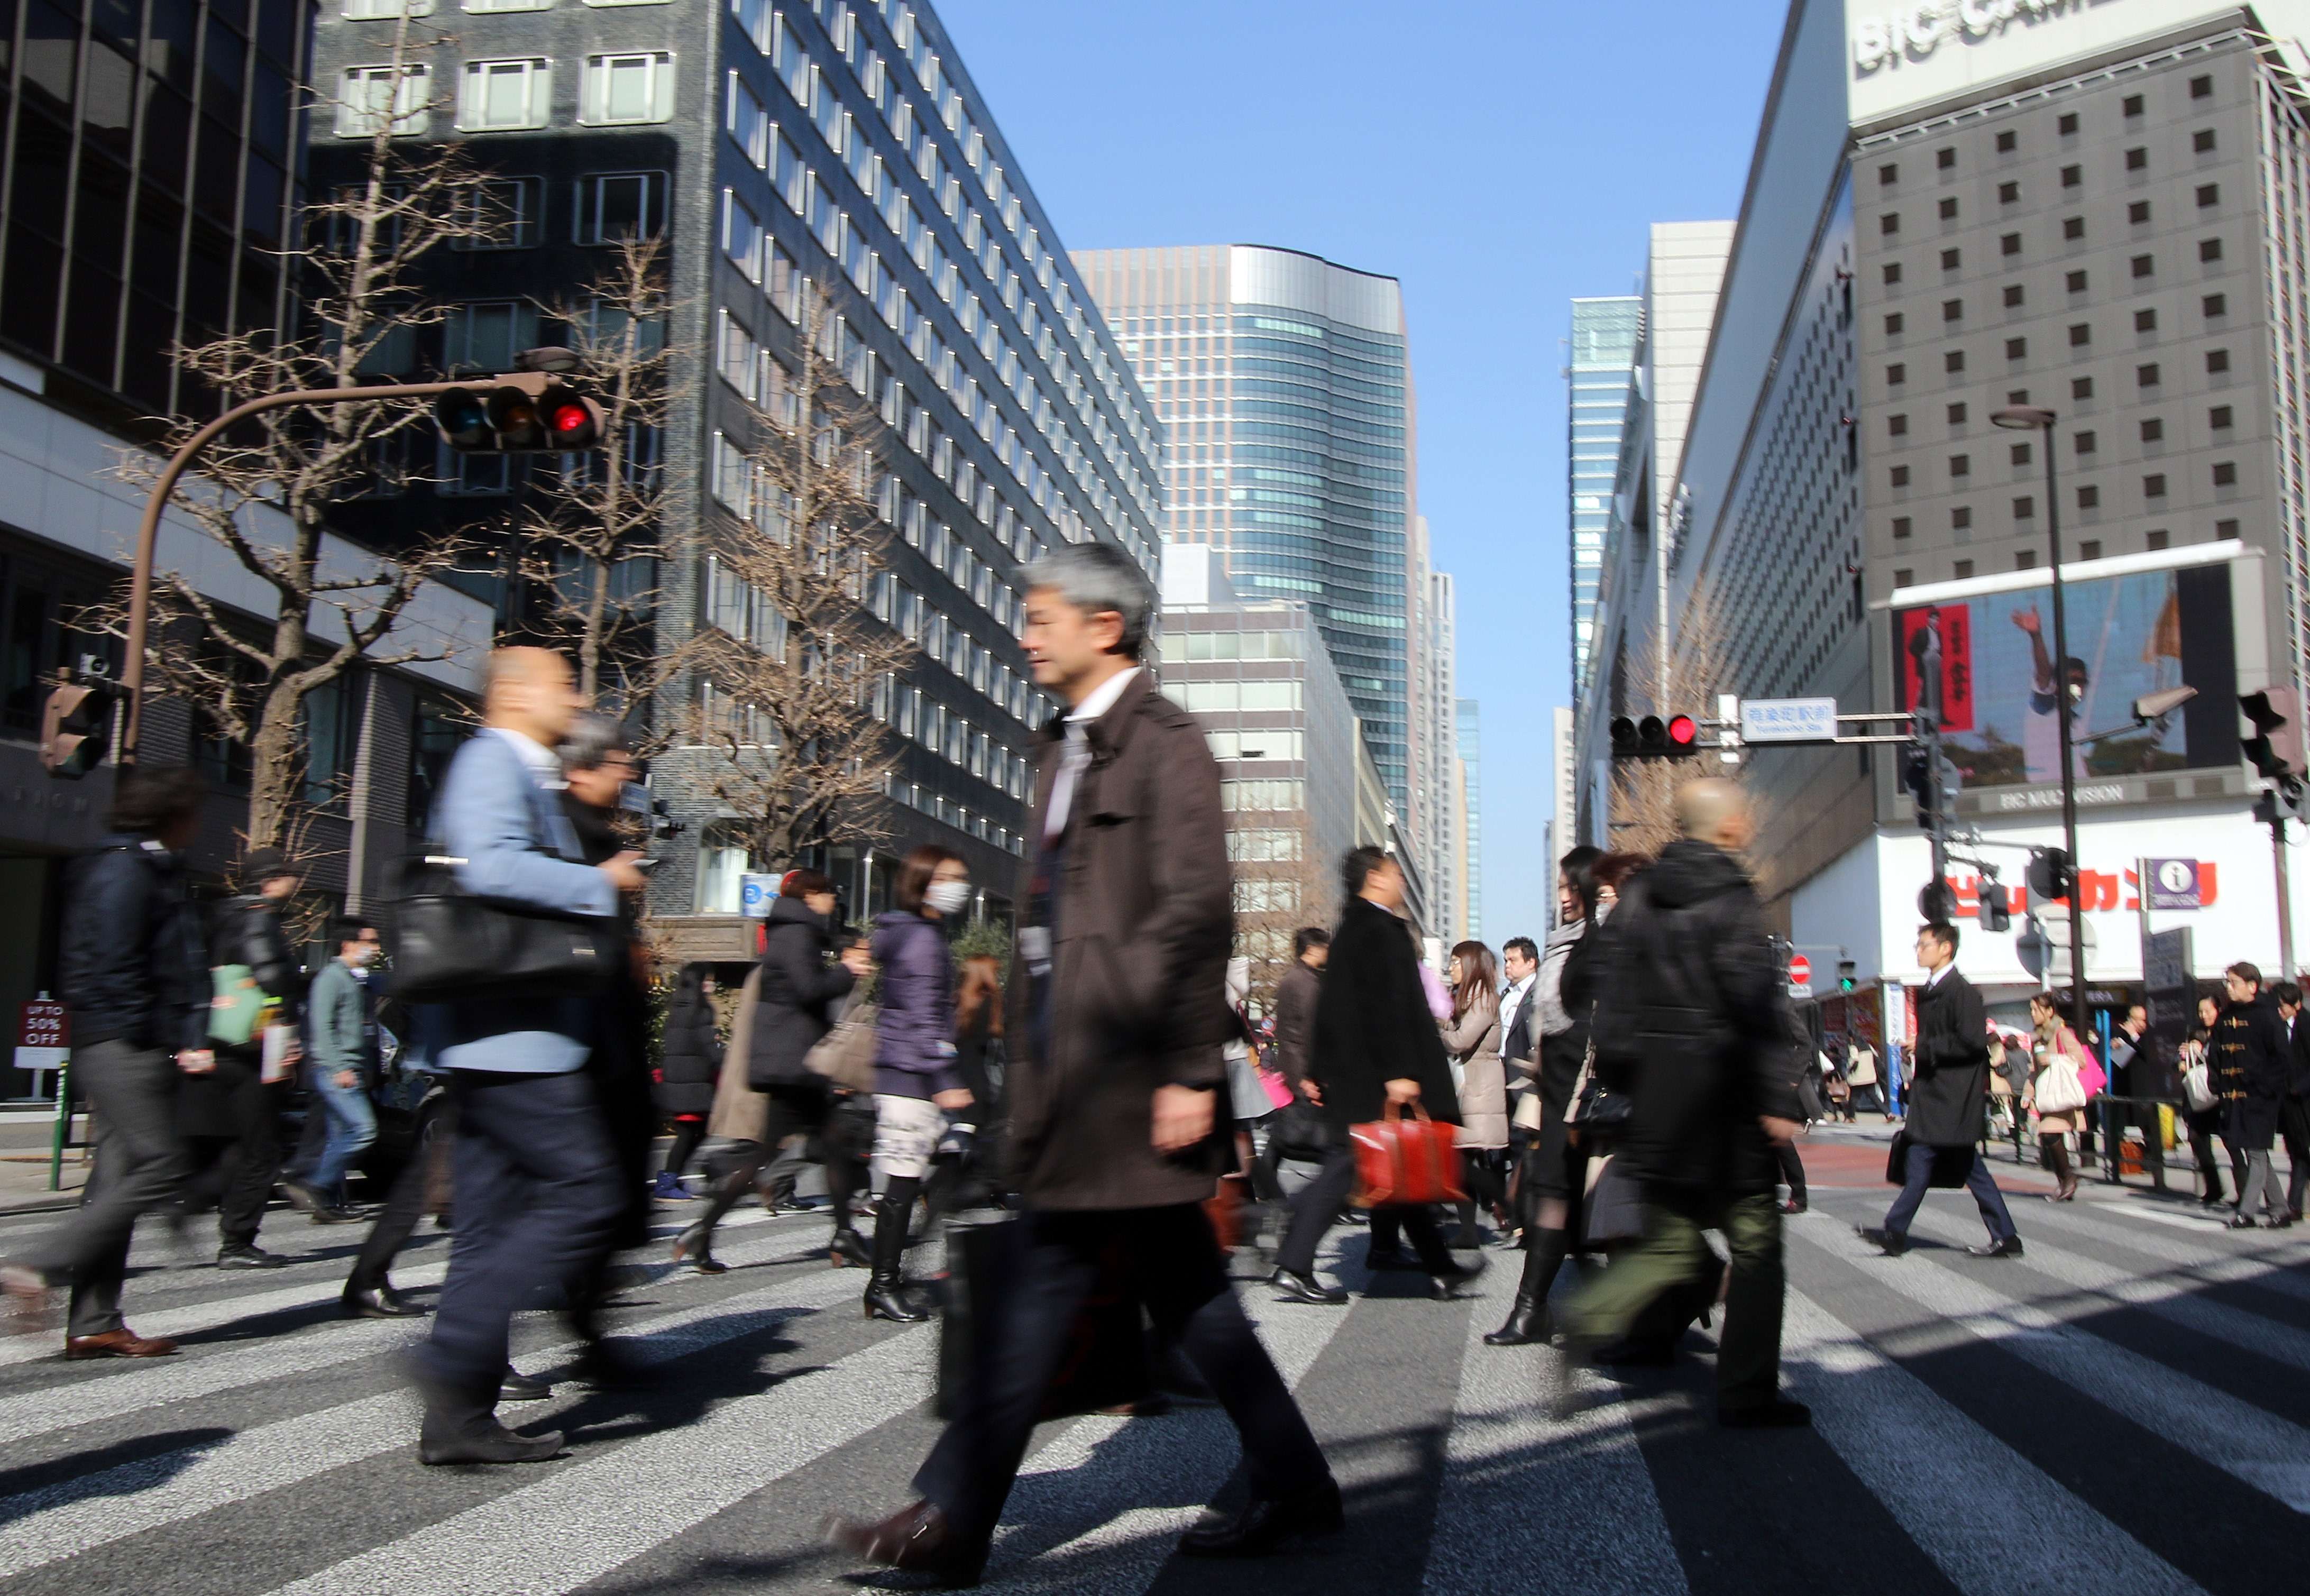 Japan's risky stimulus decision